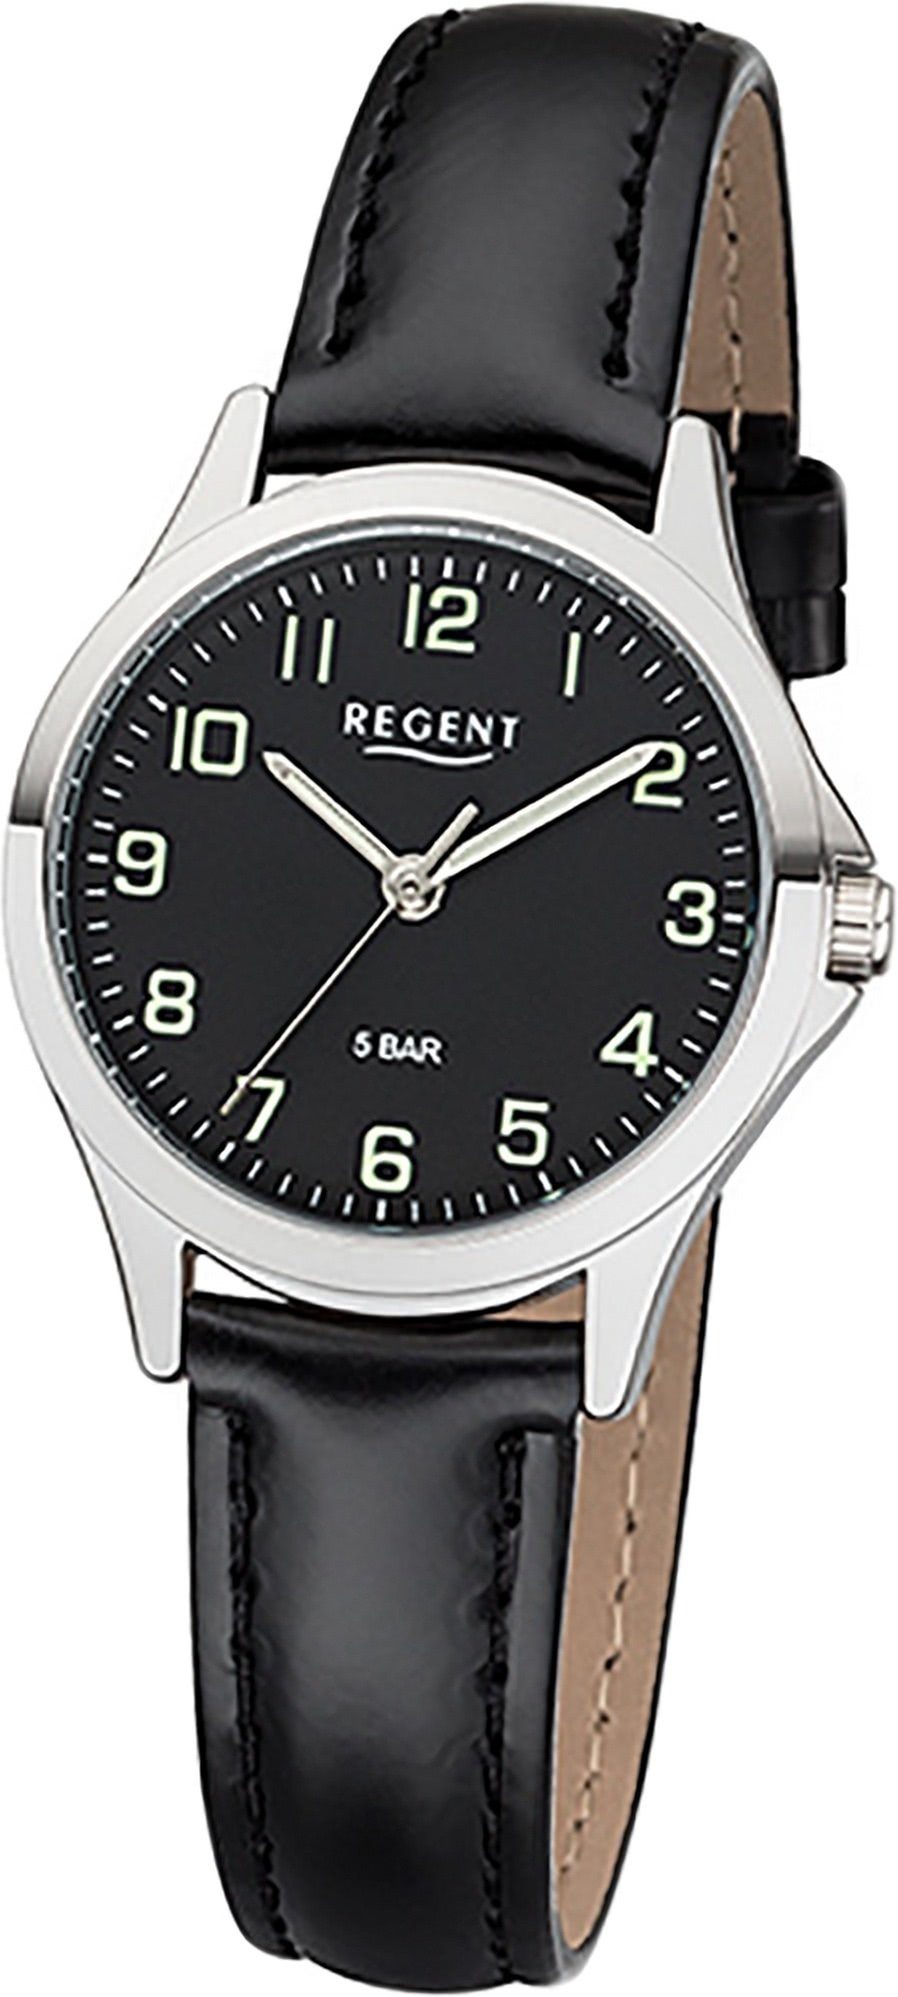 Gehäuse, Regent rundes Damenuhr Regent Damen 29mm) Leder Uhr 2112419 Lederarmband schwarz, klein (ca. Quarzuhr Analog,